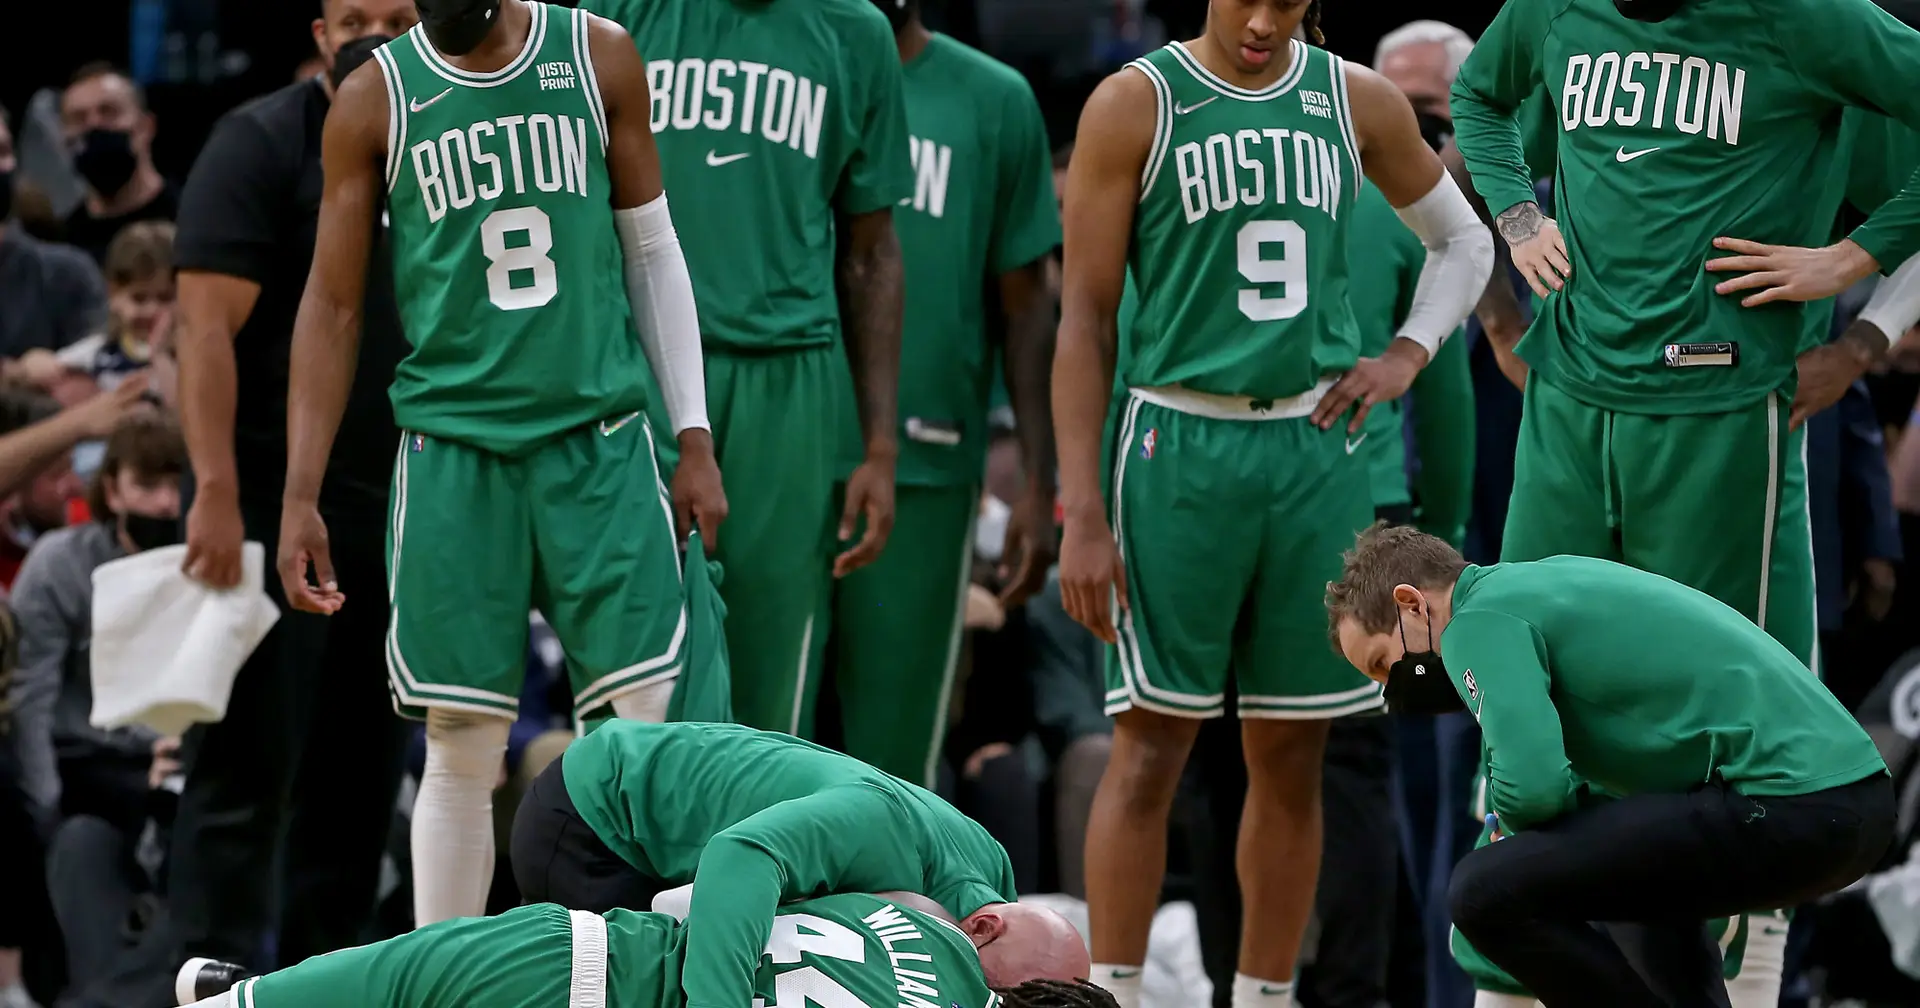 Jogador do Boston Celtics assina contrato mais valioso da história da NBA >  No Ataque